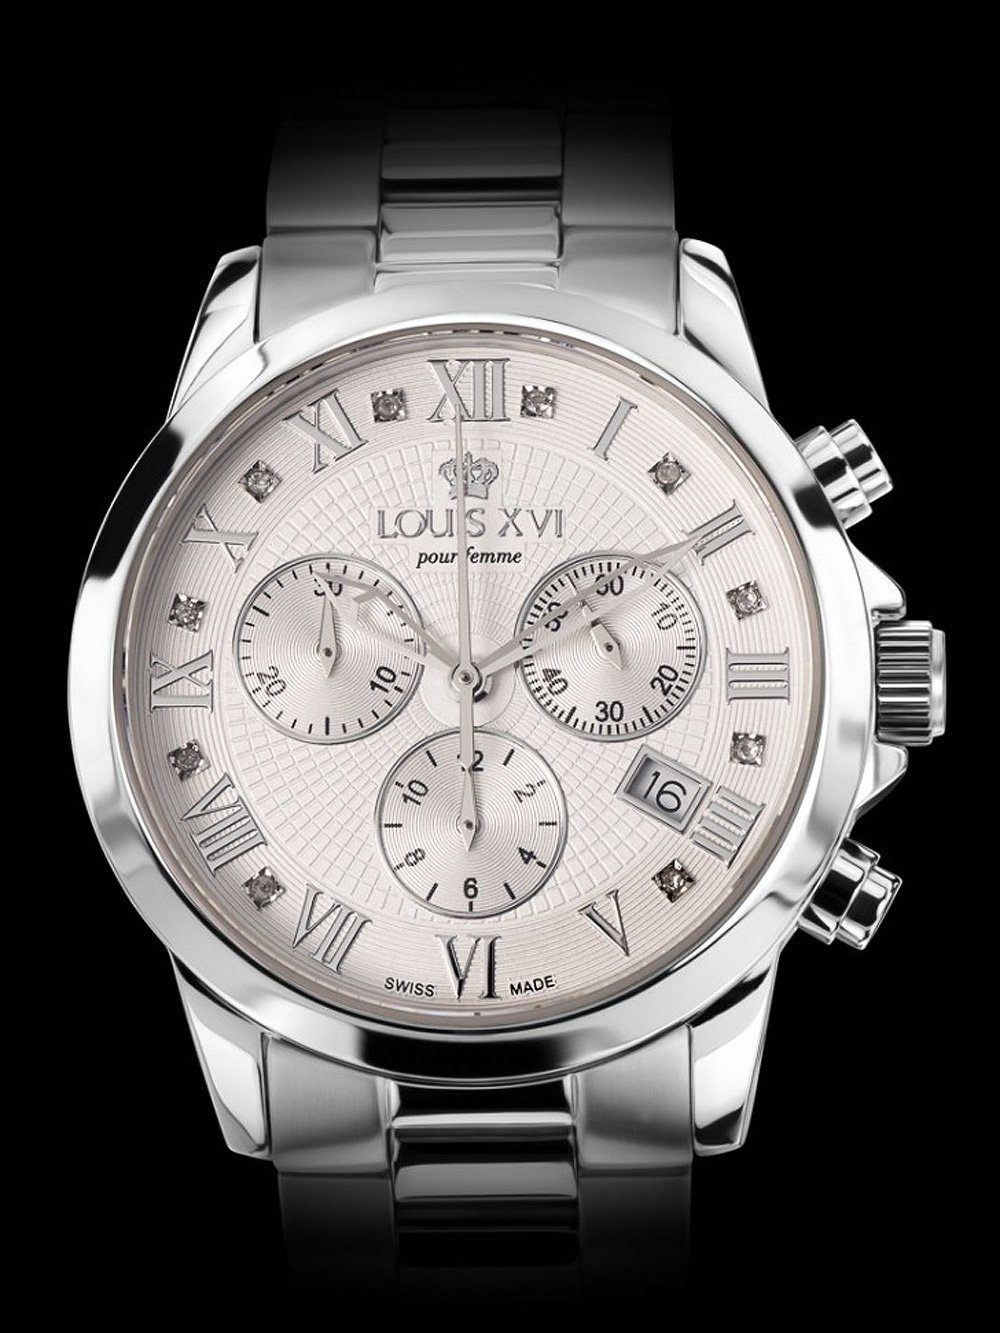 LOUIS XVI Schweizer Chronograph Uhr LXVI516 Louis XVI Athos Dam femme pour